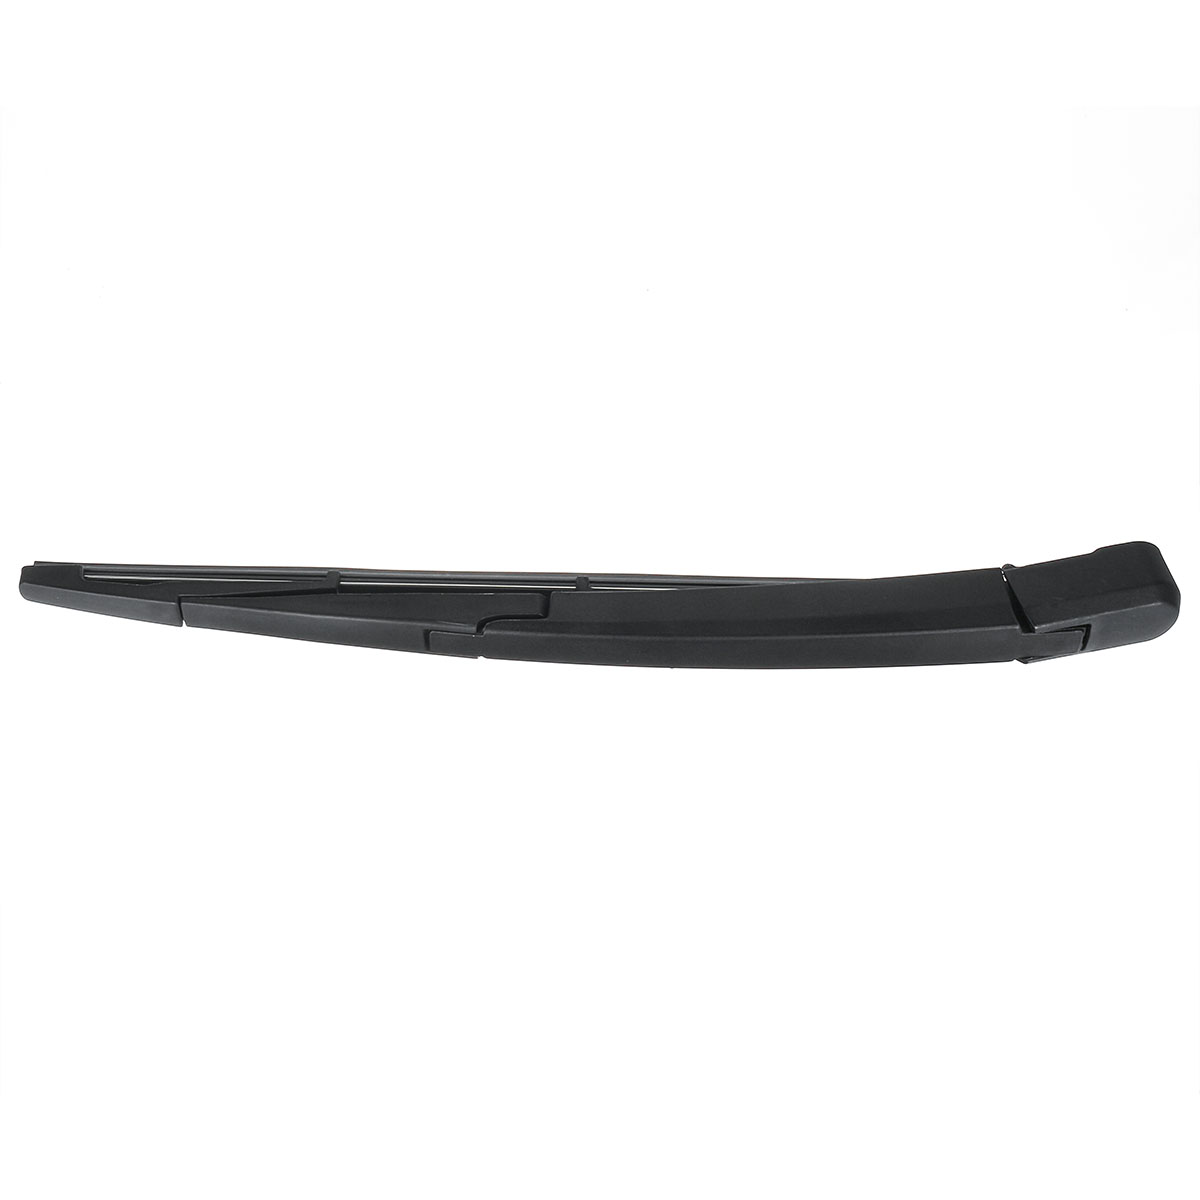 2Pcs Rear Wiper & Wiper Arm Blade Kit for Vauxhall / Opel Astra J 2009-2015